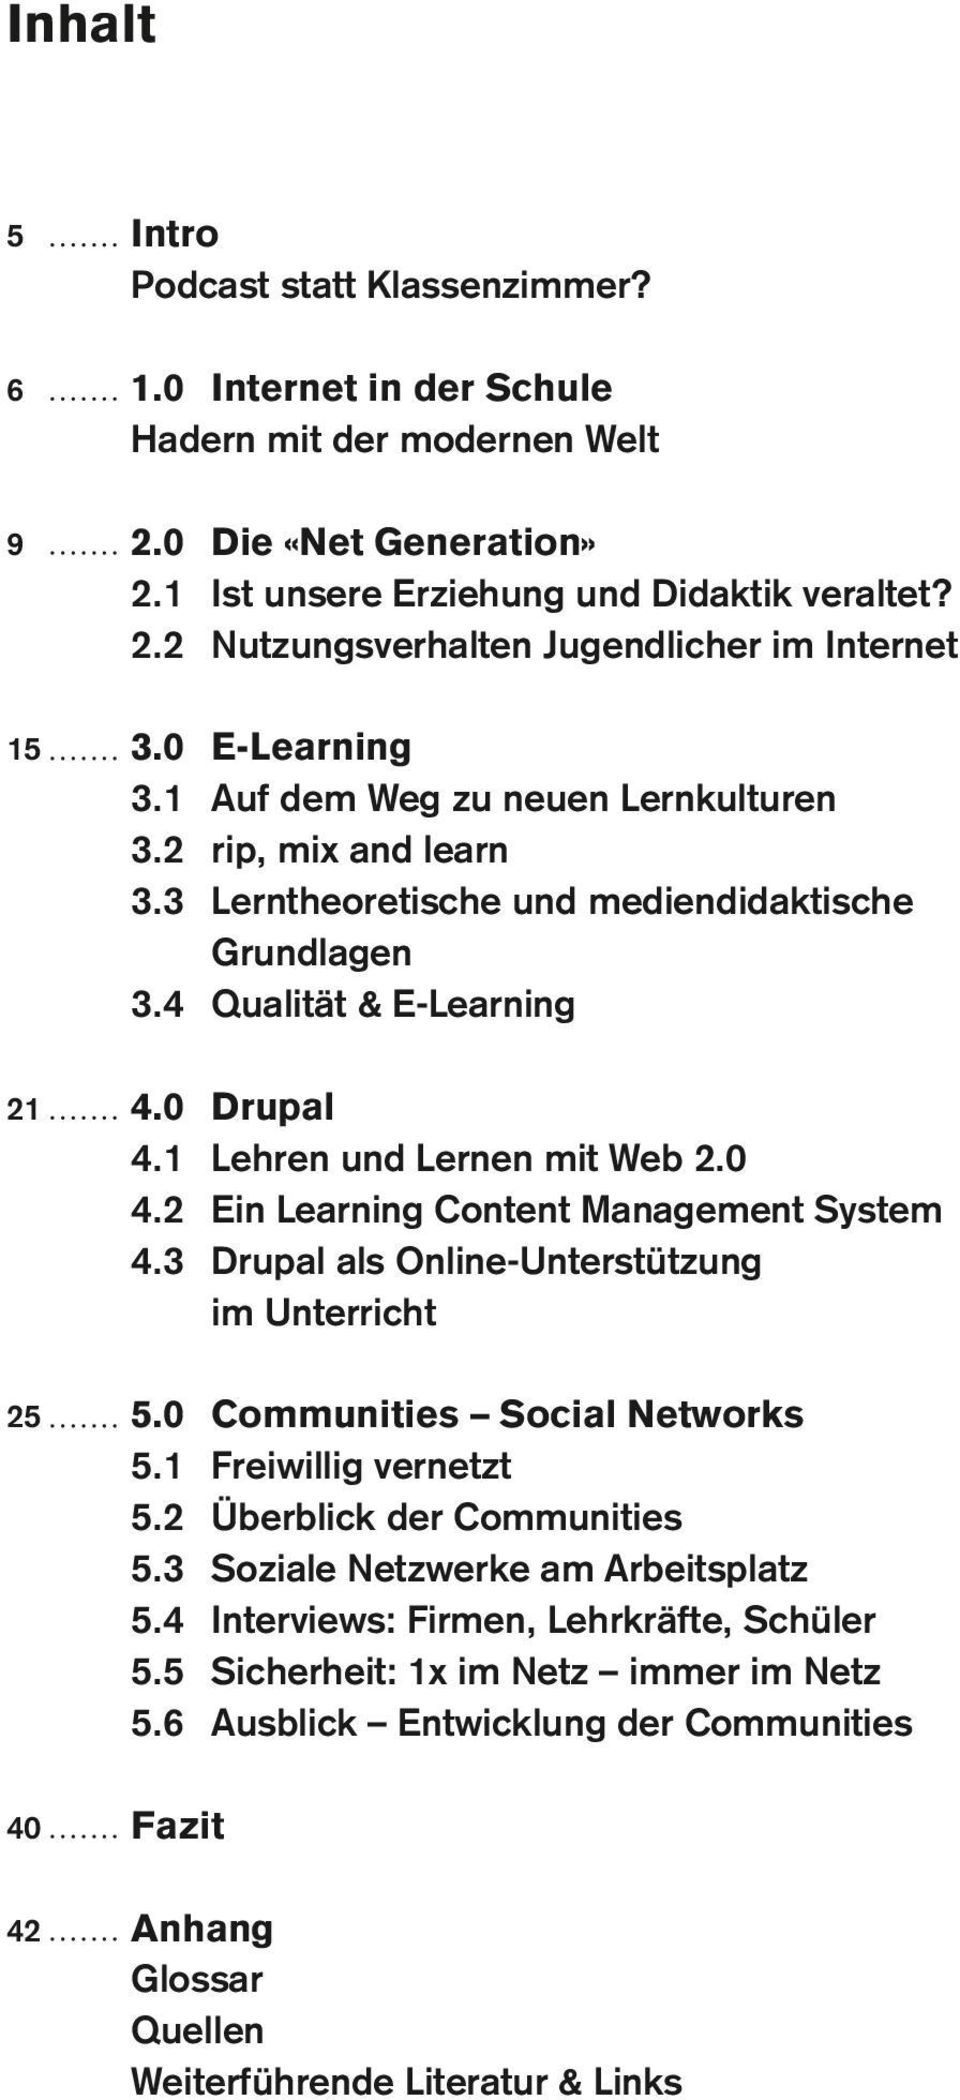 3 E-Learning Auf dem Weg zu neuen Lernkulturen rip, mix and learn Lerntheoretische und mediendidaktische Grundlagen Qualität & E-Learning Drupal Lehren und Lernen mit Web 2.